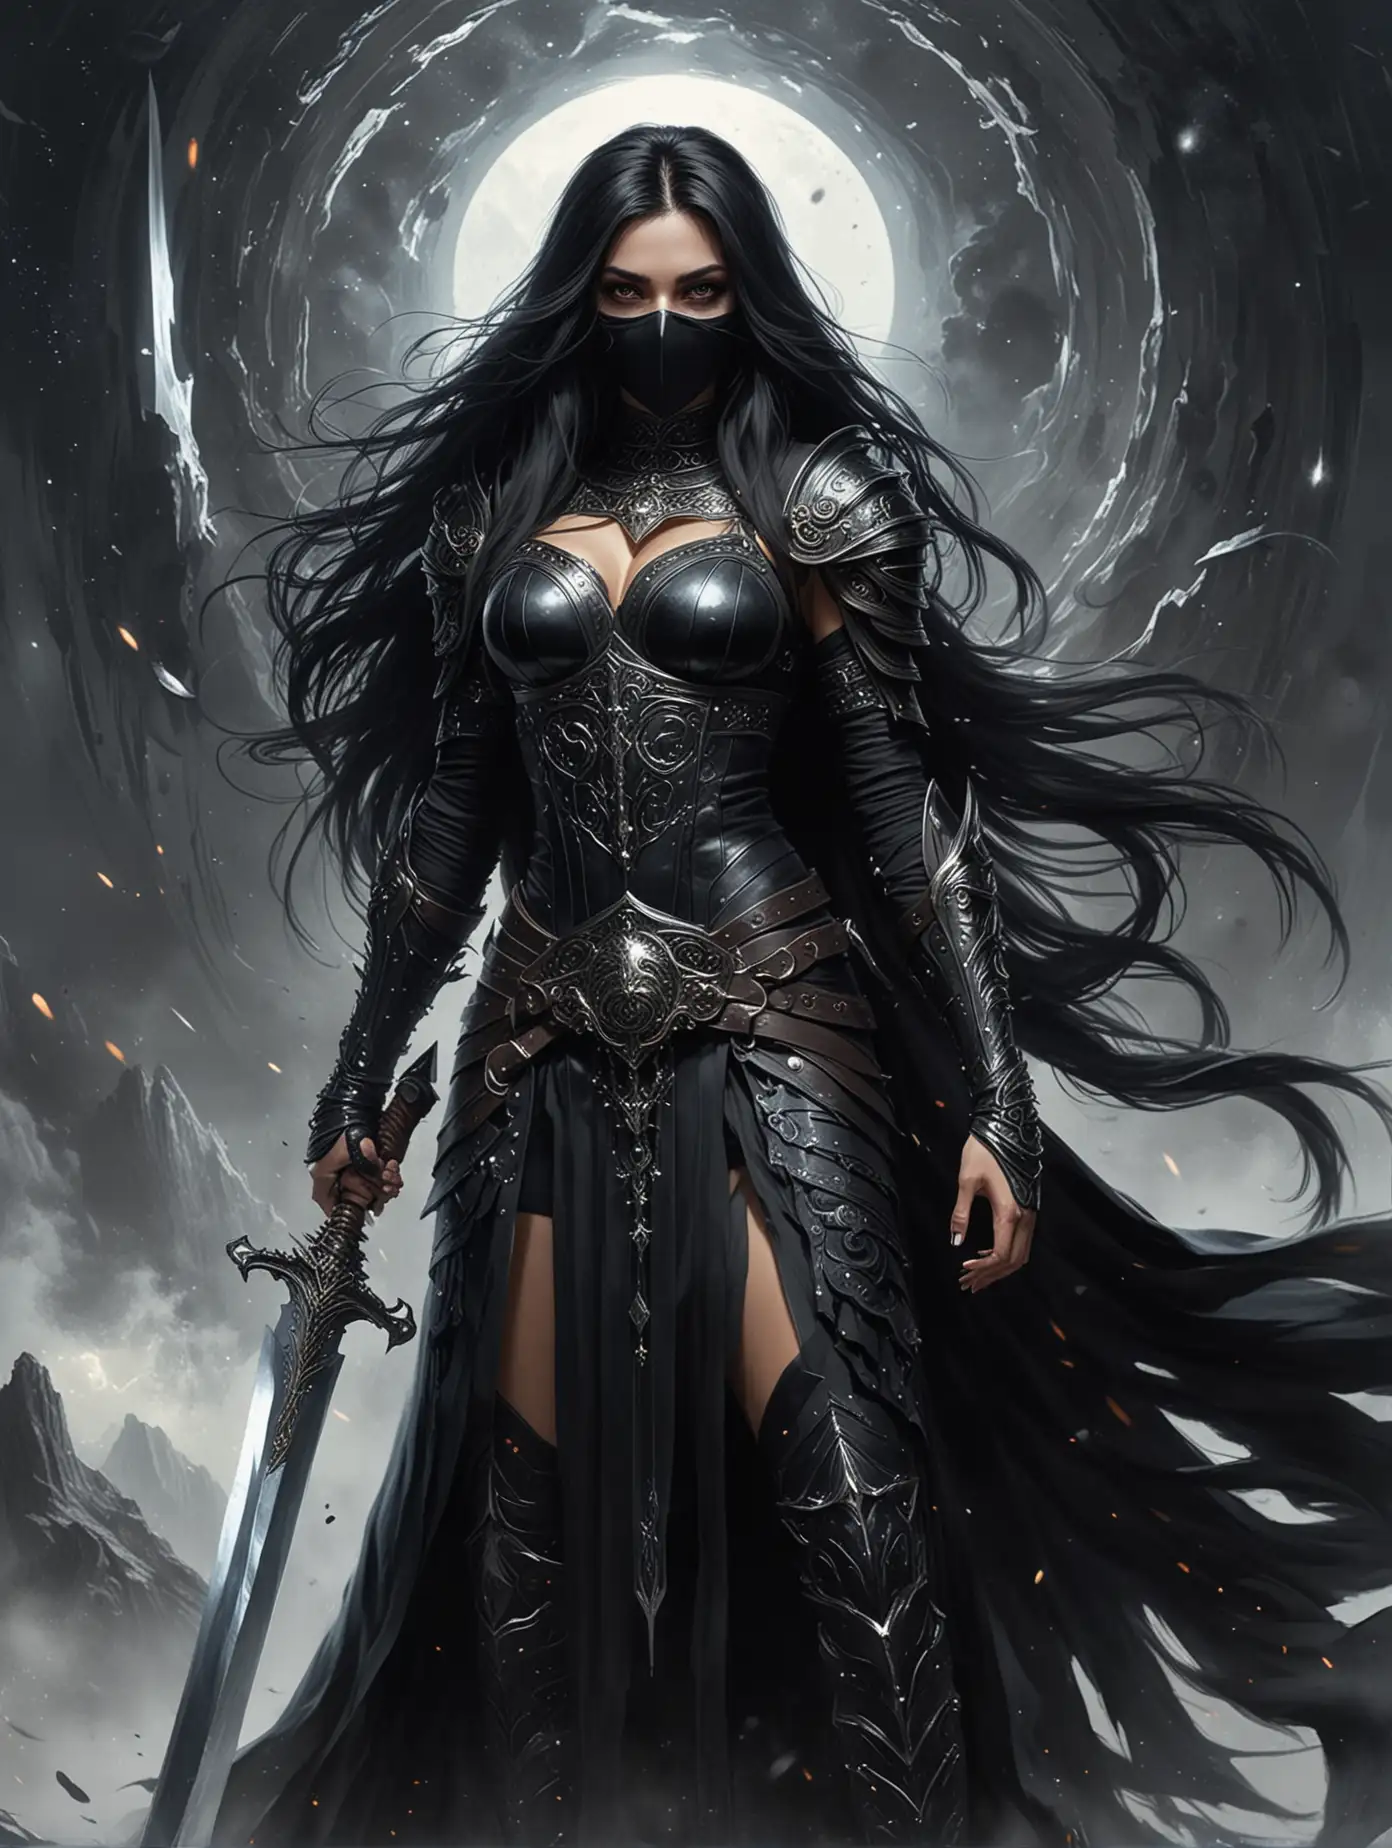 на фоне черной дыры стоит красивая женщина воин, она темная жрица в руке у нее большой меч. У женщины длинные черные волосы. На лице черная маска как украшение. На женщине одежда с доспехами черного цвета, которая развивается на ветру.